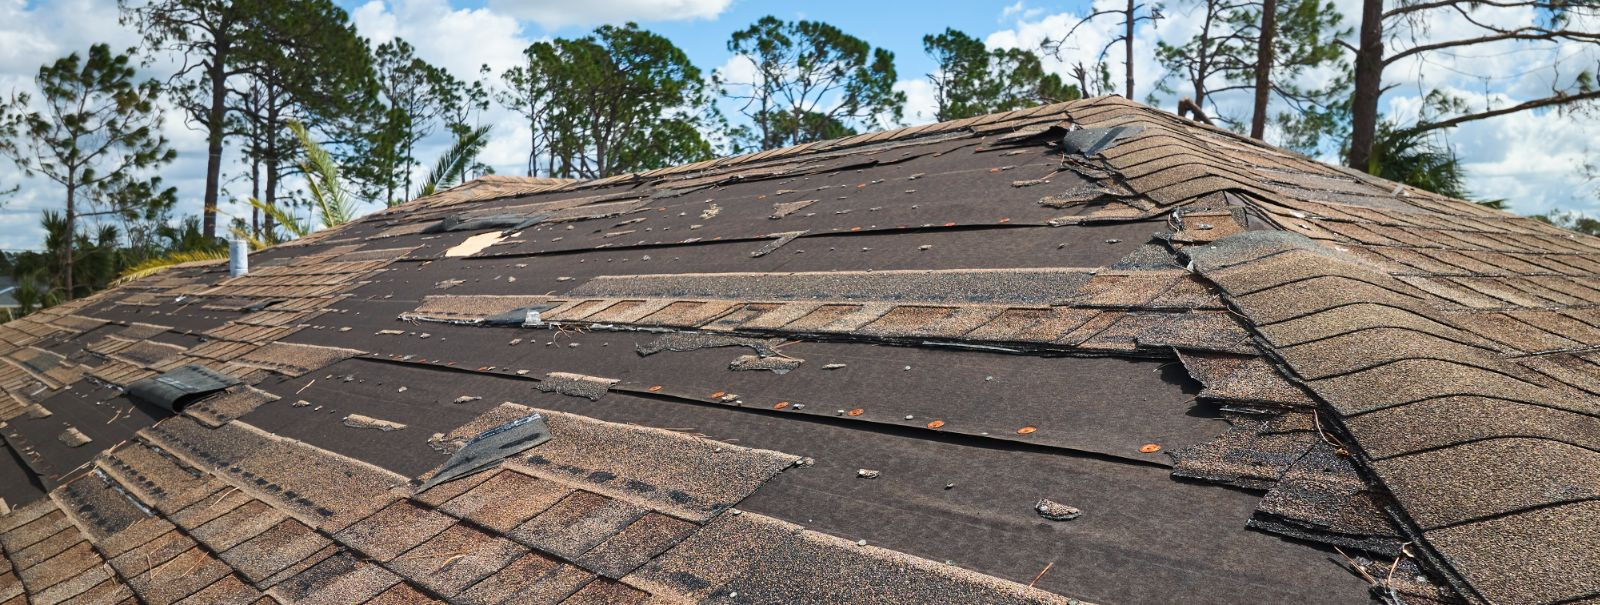 Kas teie kodu katus on hiljuti kahjustada saanud? See võib olla murettekitav olukord, kuid õnneks on olemas lahendused, mis aitavad teie vara kaitsta ja taastad